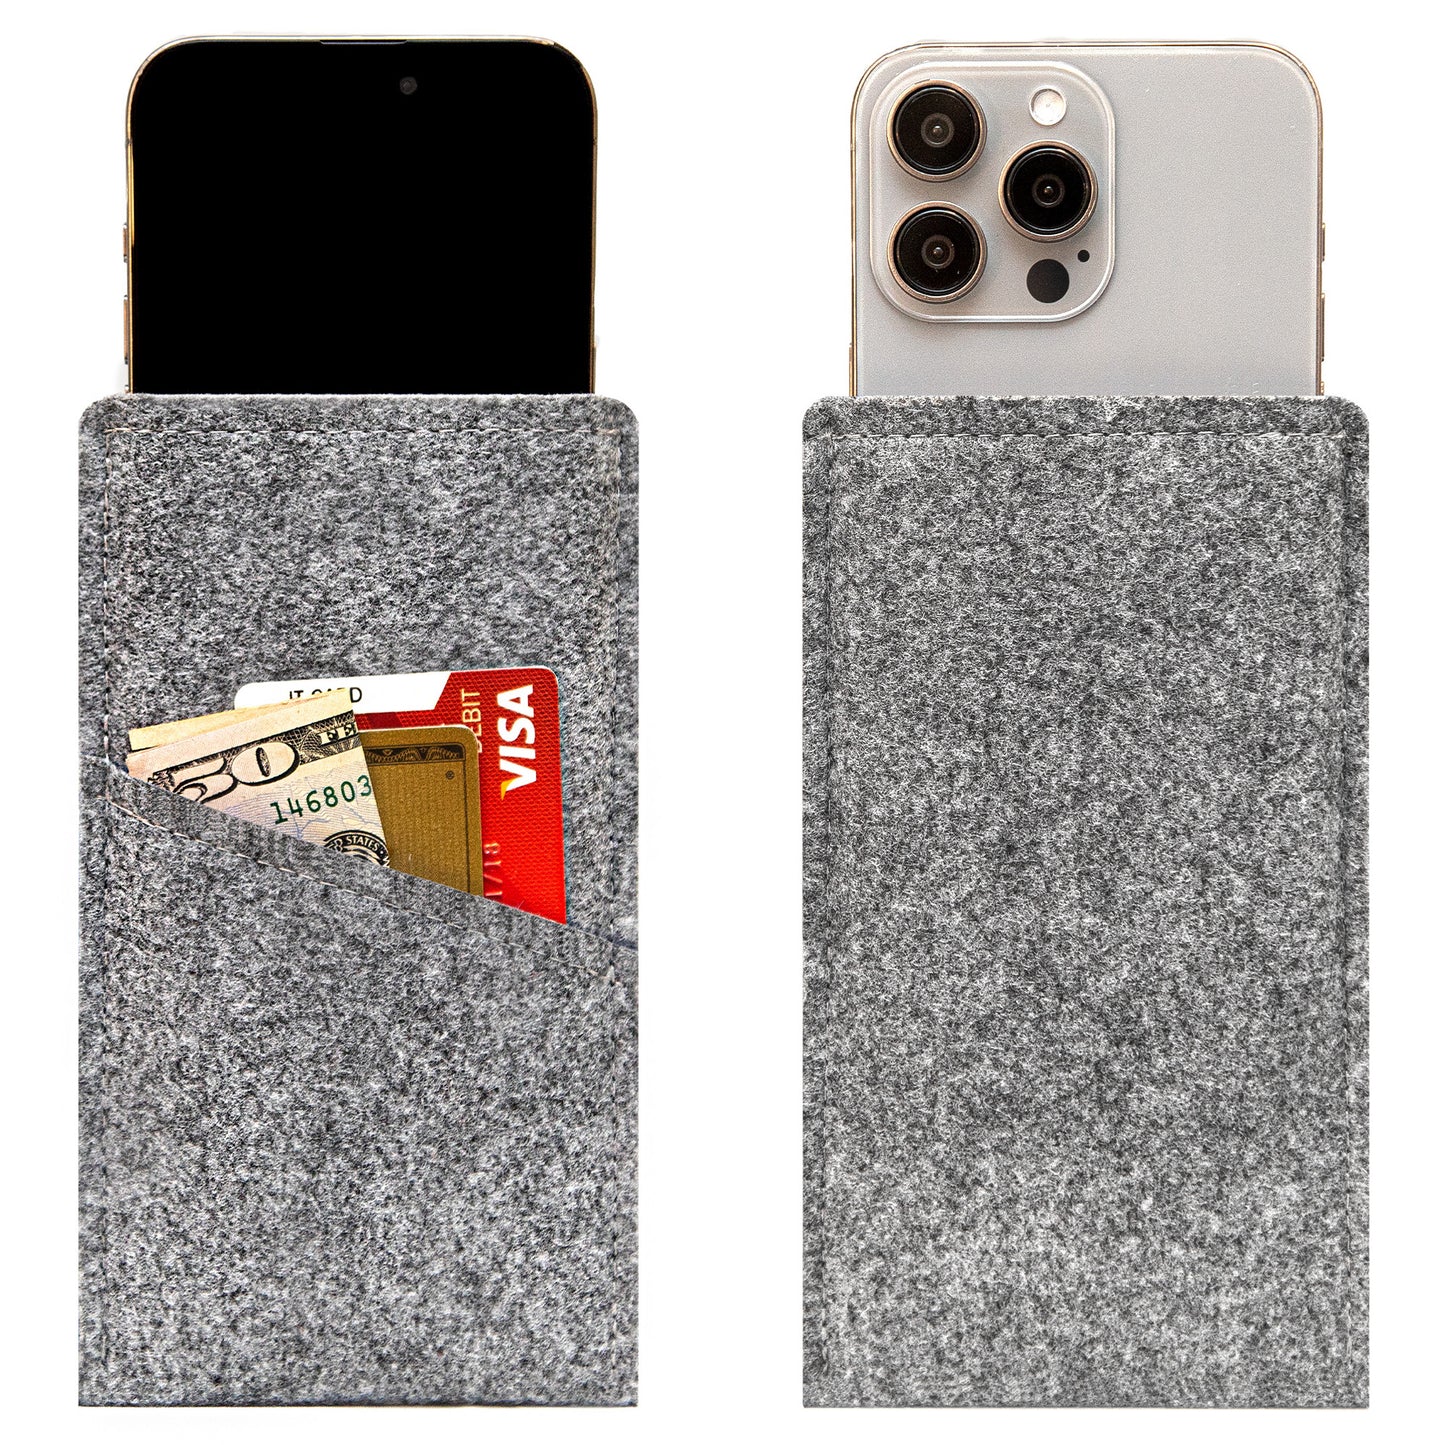 Premium Felt iPhone Sleeve with Card Pocket - Grey & Sky Blue